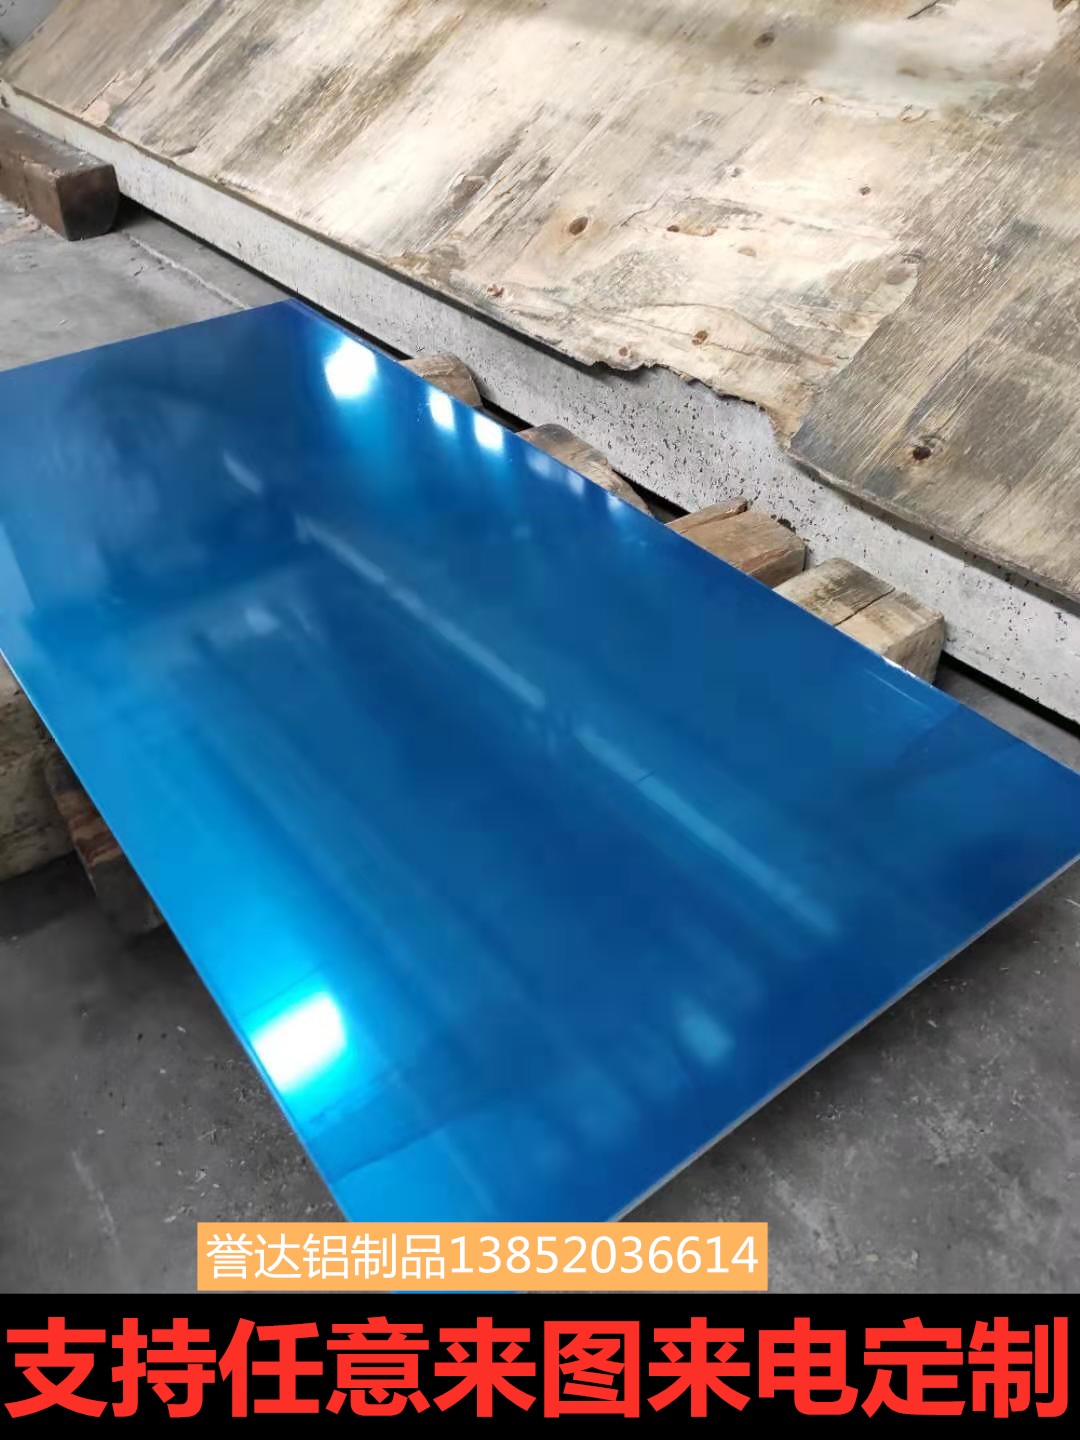 江苏合金覆膜铝板生产厂家铝板零切6mm铝板剪板加工定制 合金铝板价格17500/吨图片